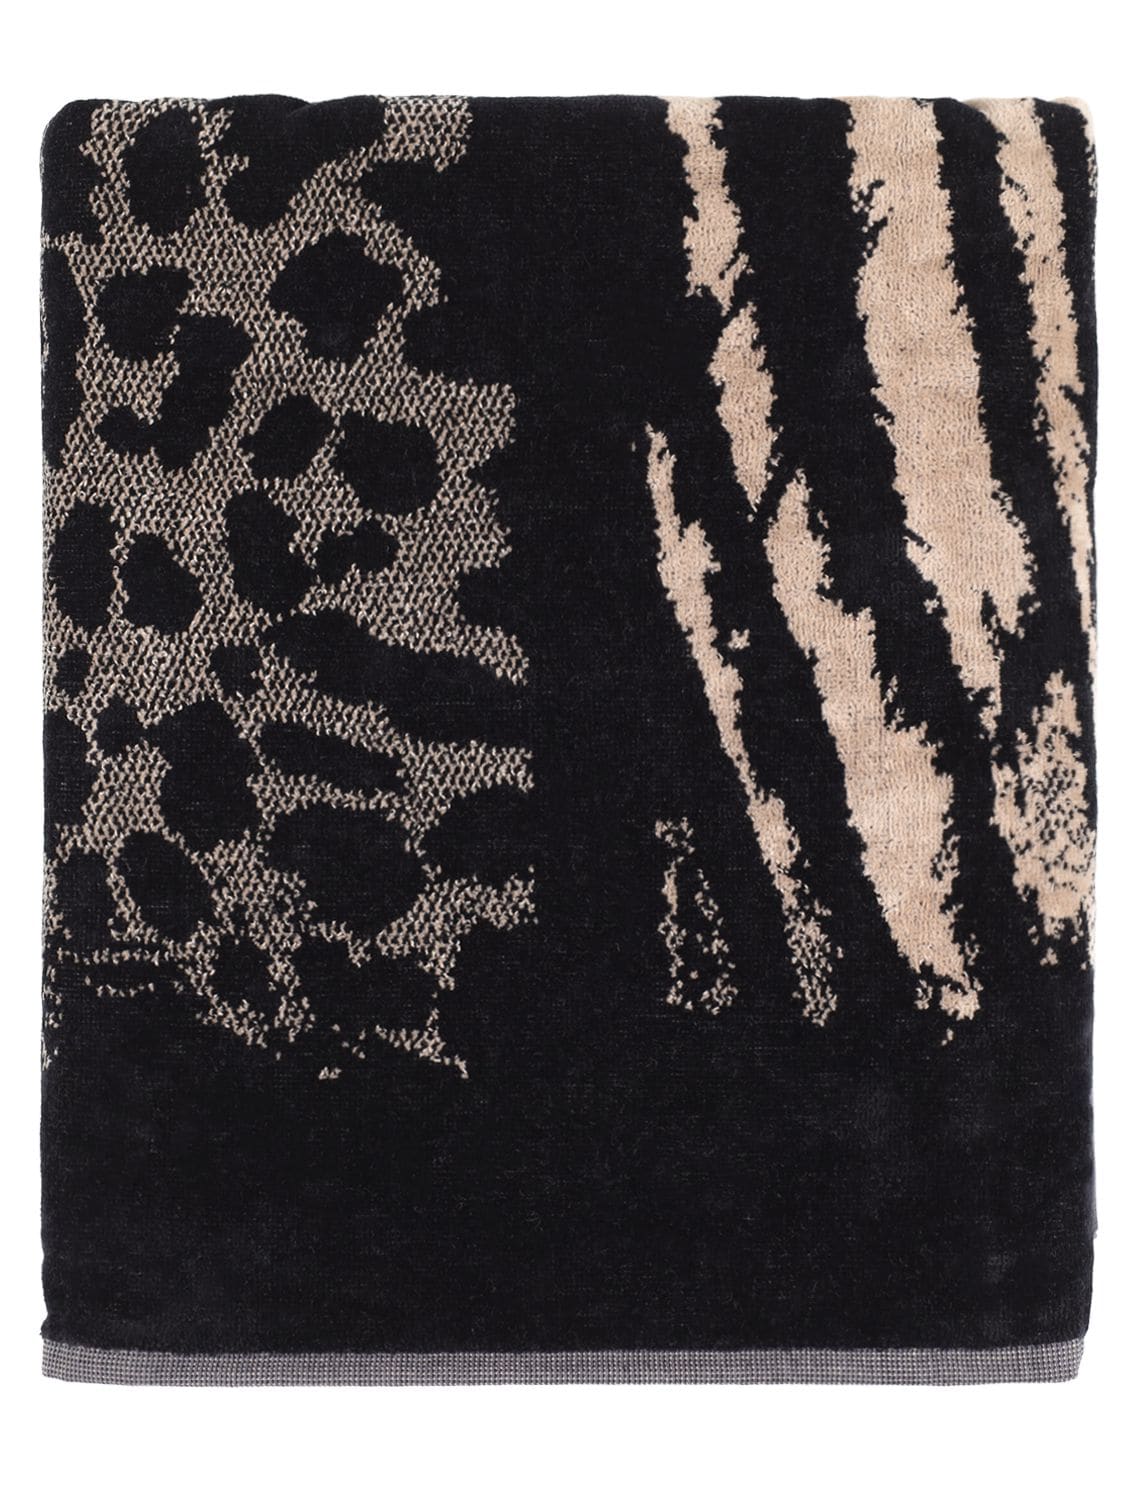 Image of African Zebra Towel